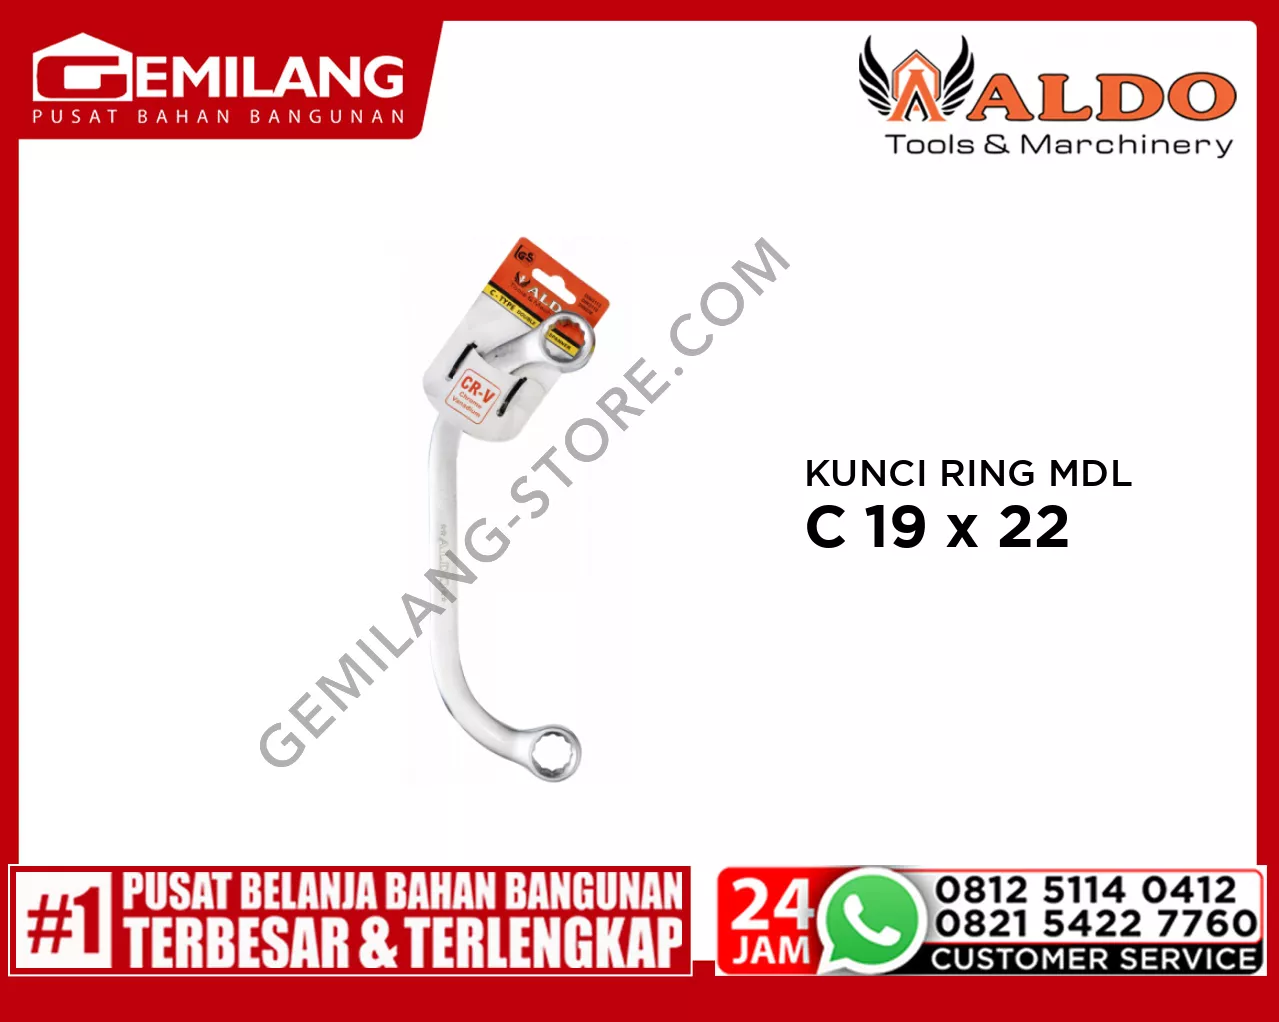 ALDO KUNCI RING MODEL C 19 x 22